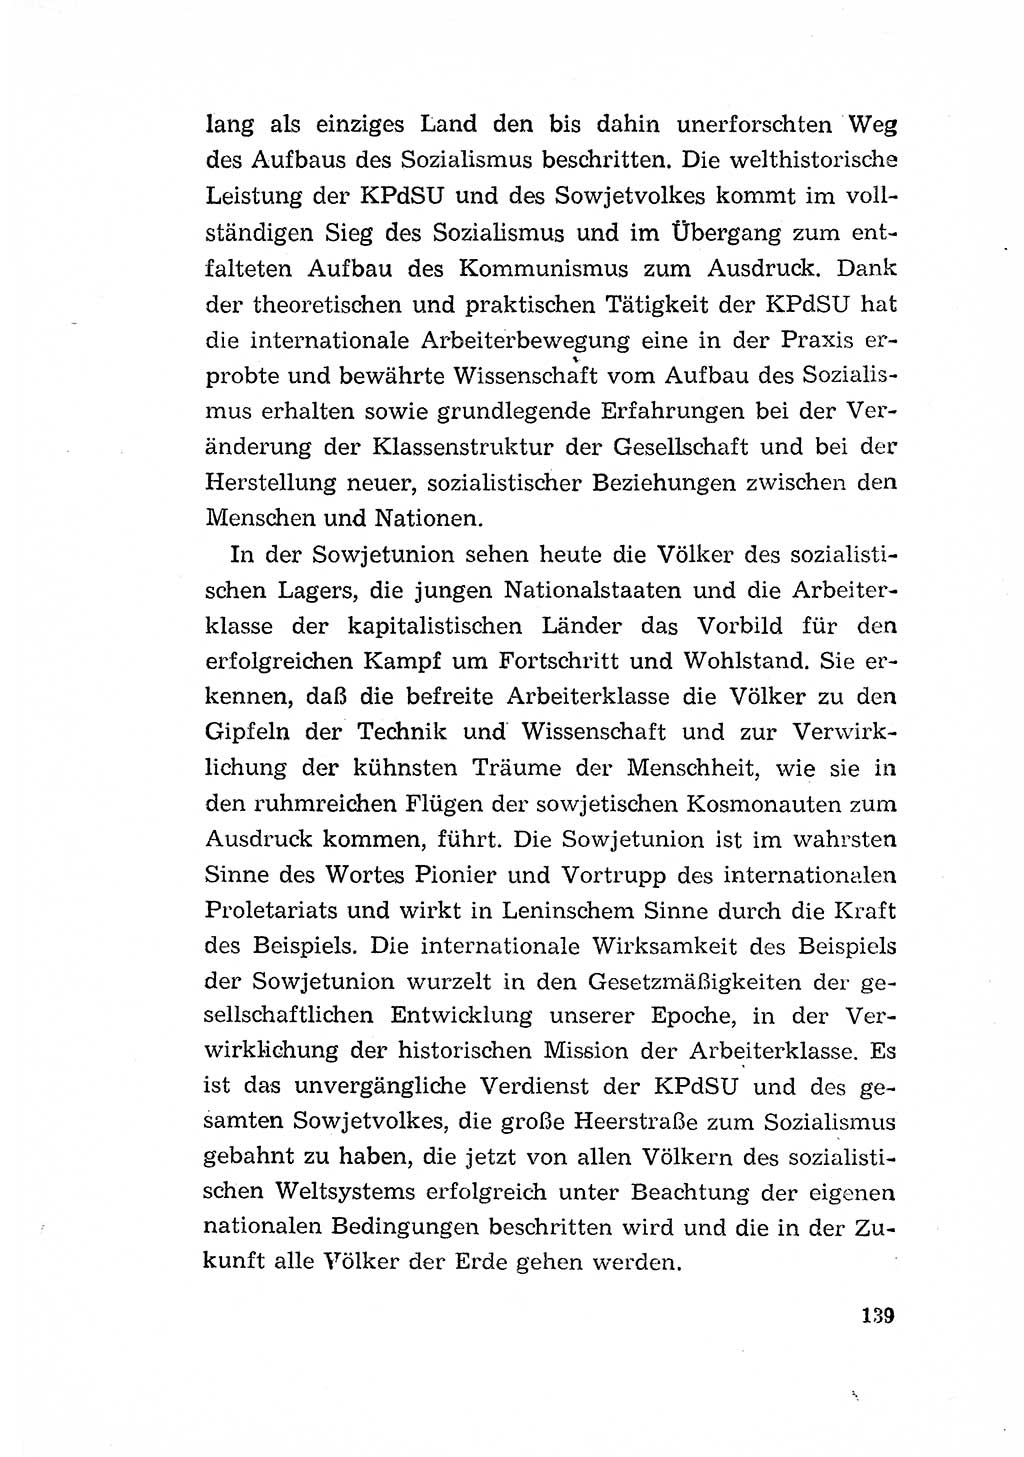 Programm der Sozialistischen Einheitspartei Deutschlands (SED) [Deutsche Demokratische Republik (DDR)] 1963, Seite 139 (Progr. SED DDR 1963, S. 139)